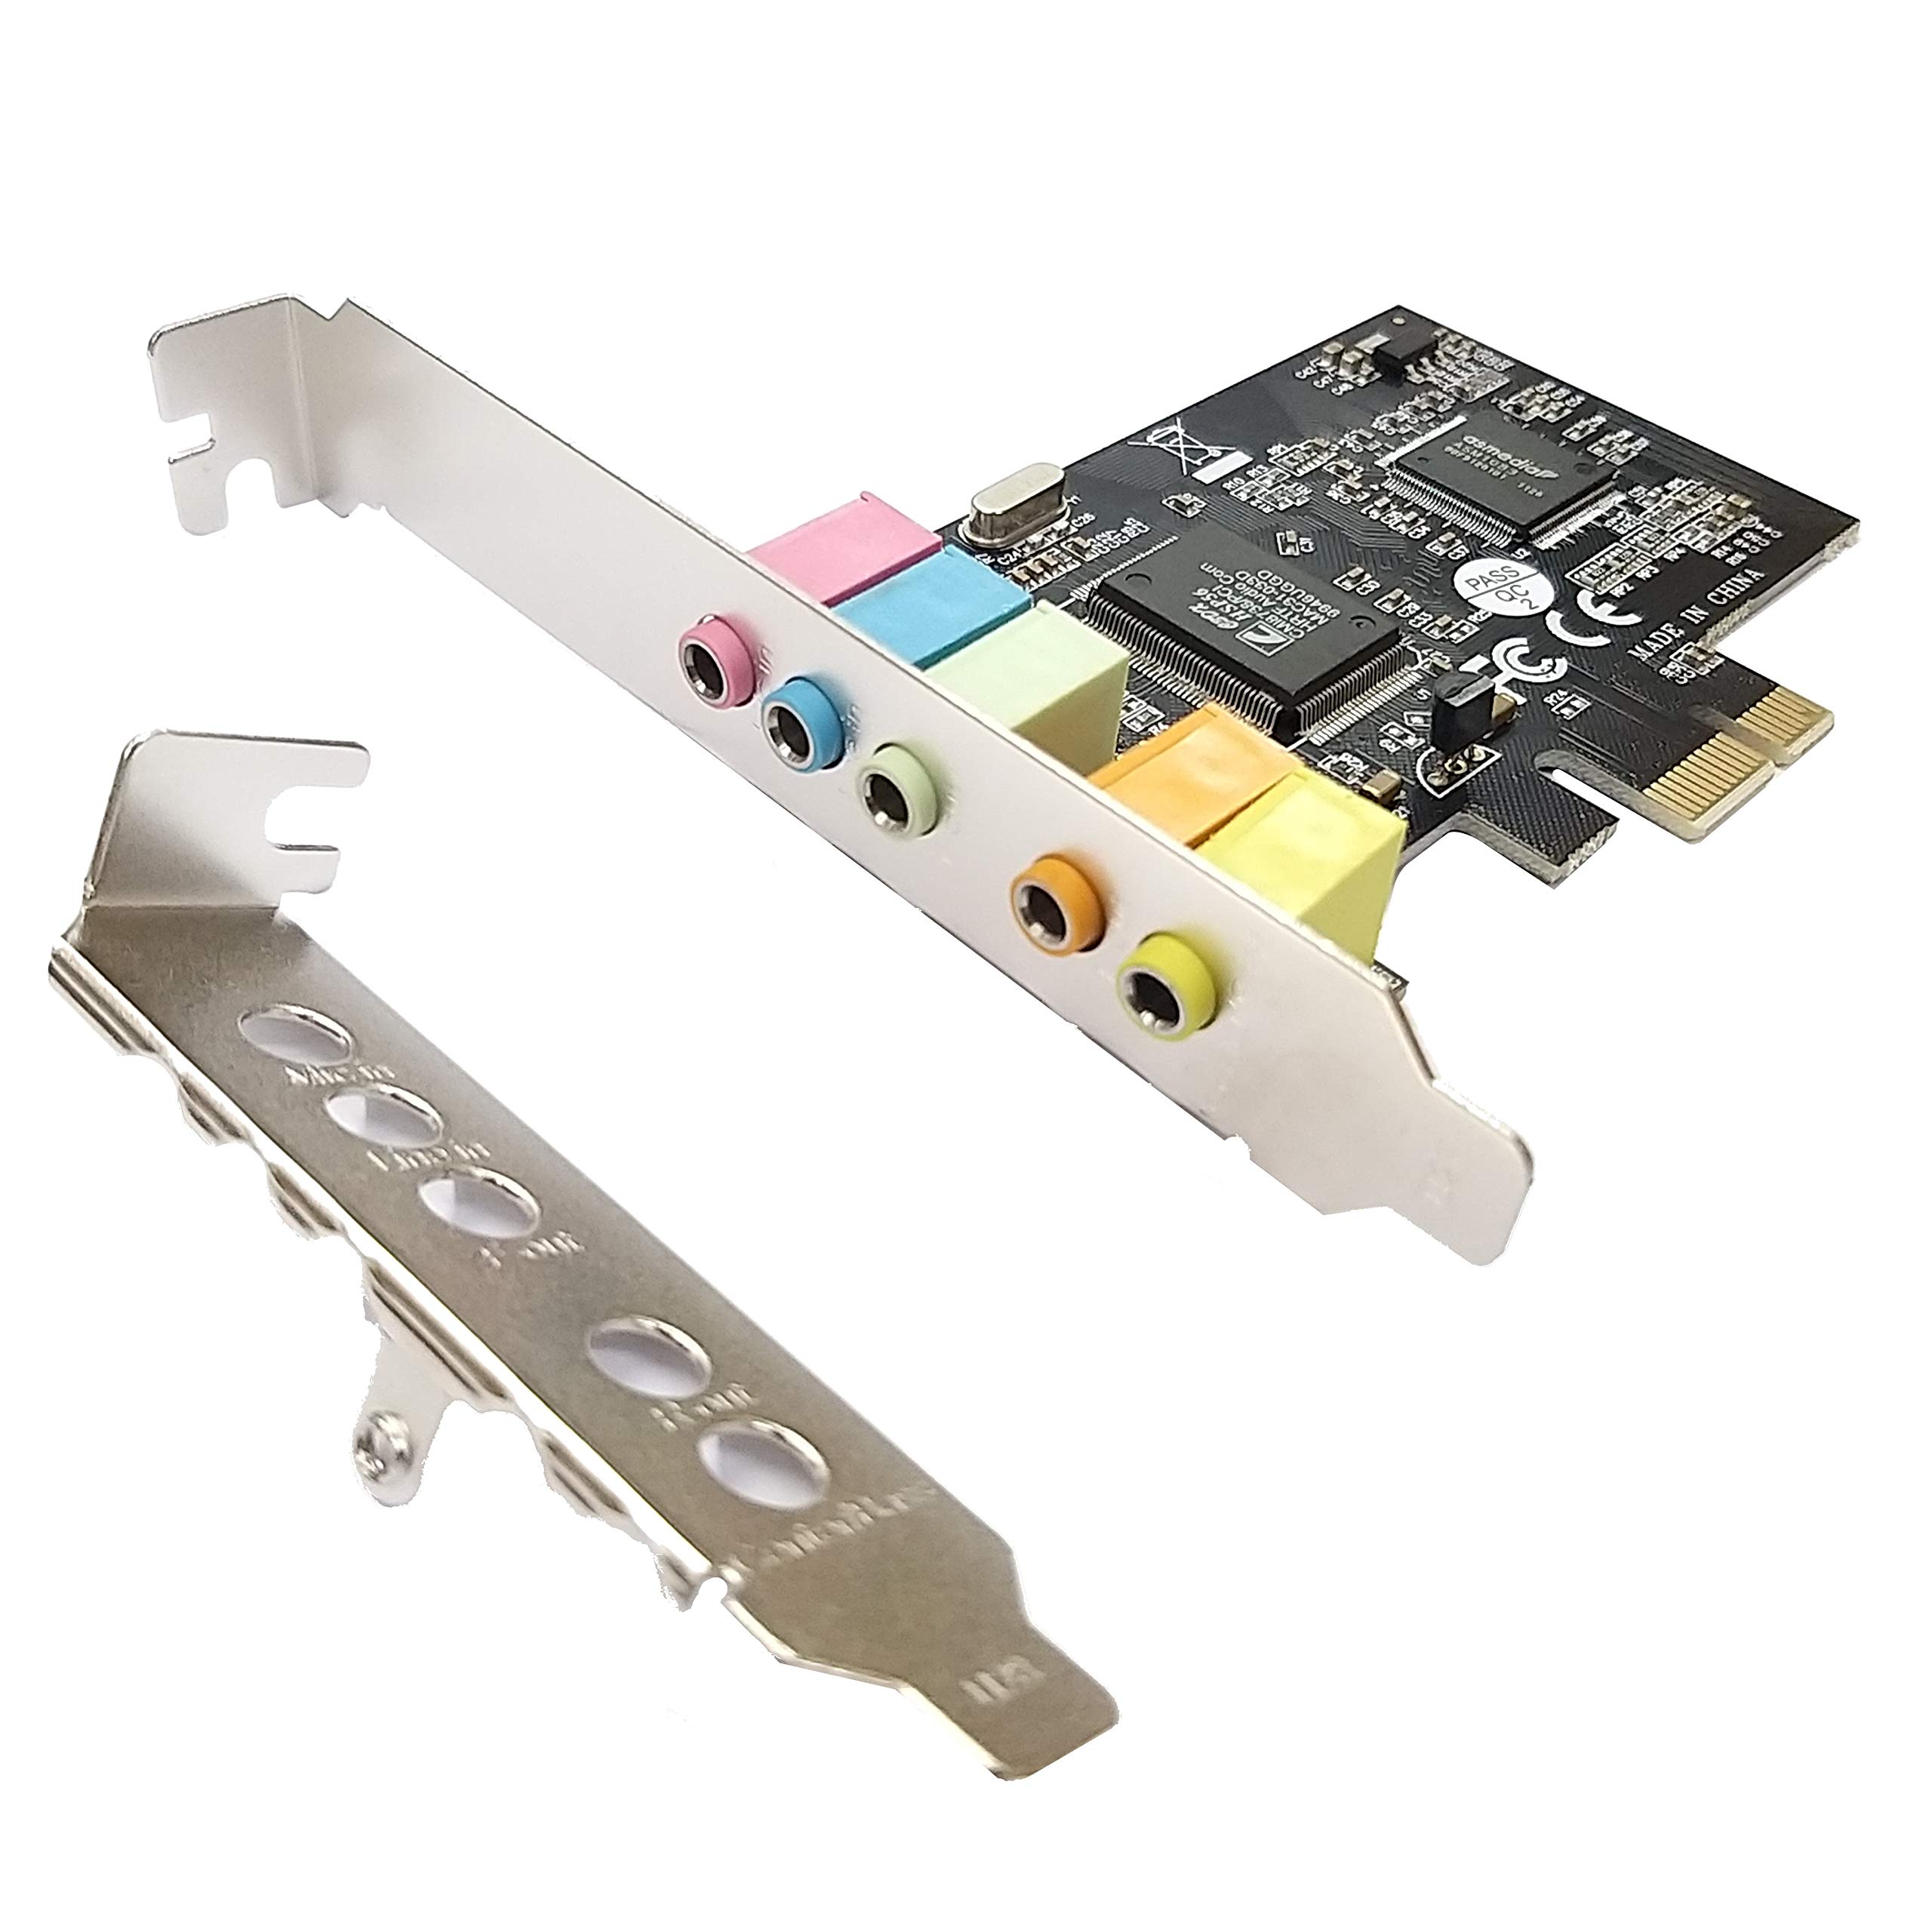 HINYSENO PCI-E CMI8738 5.1 Channel Stereo Sound Card Signal-Noise-Reduction Win XP/Win 7/ Win 8/ Win 10, 32Bit 64Bit